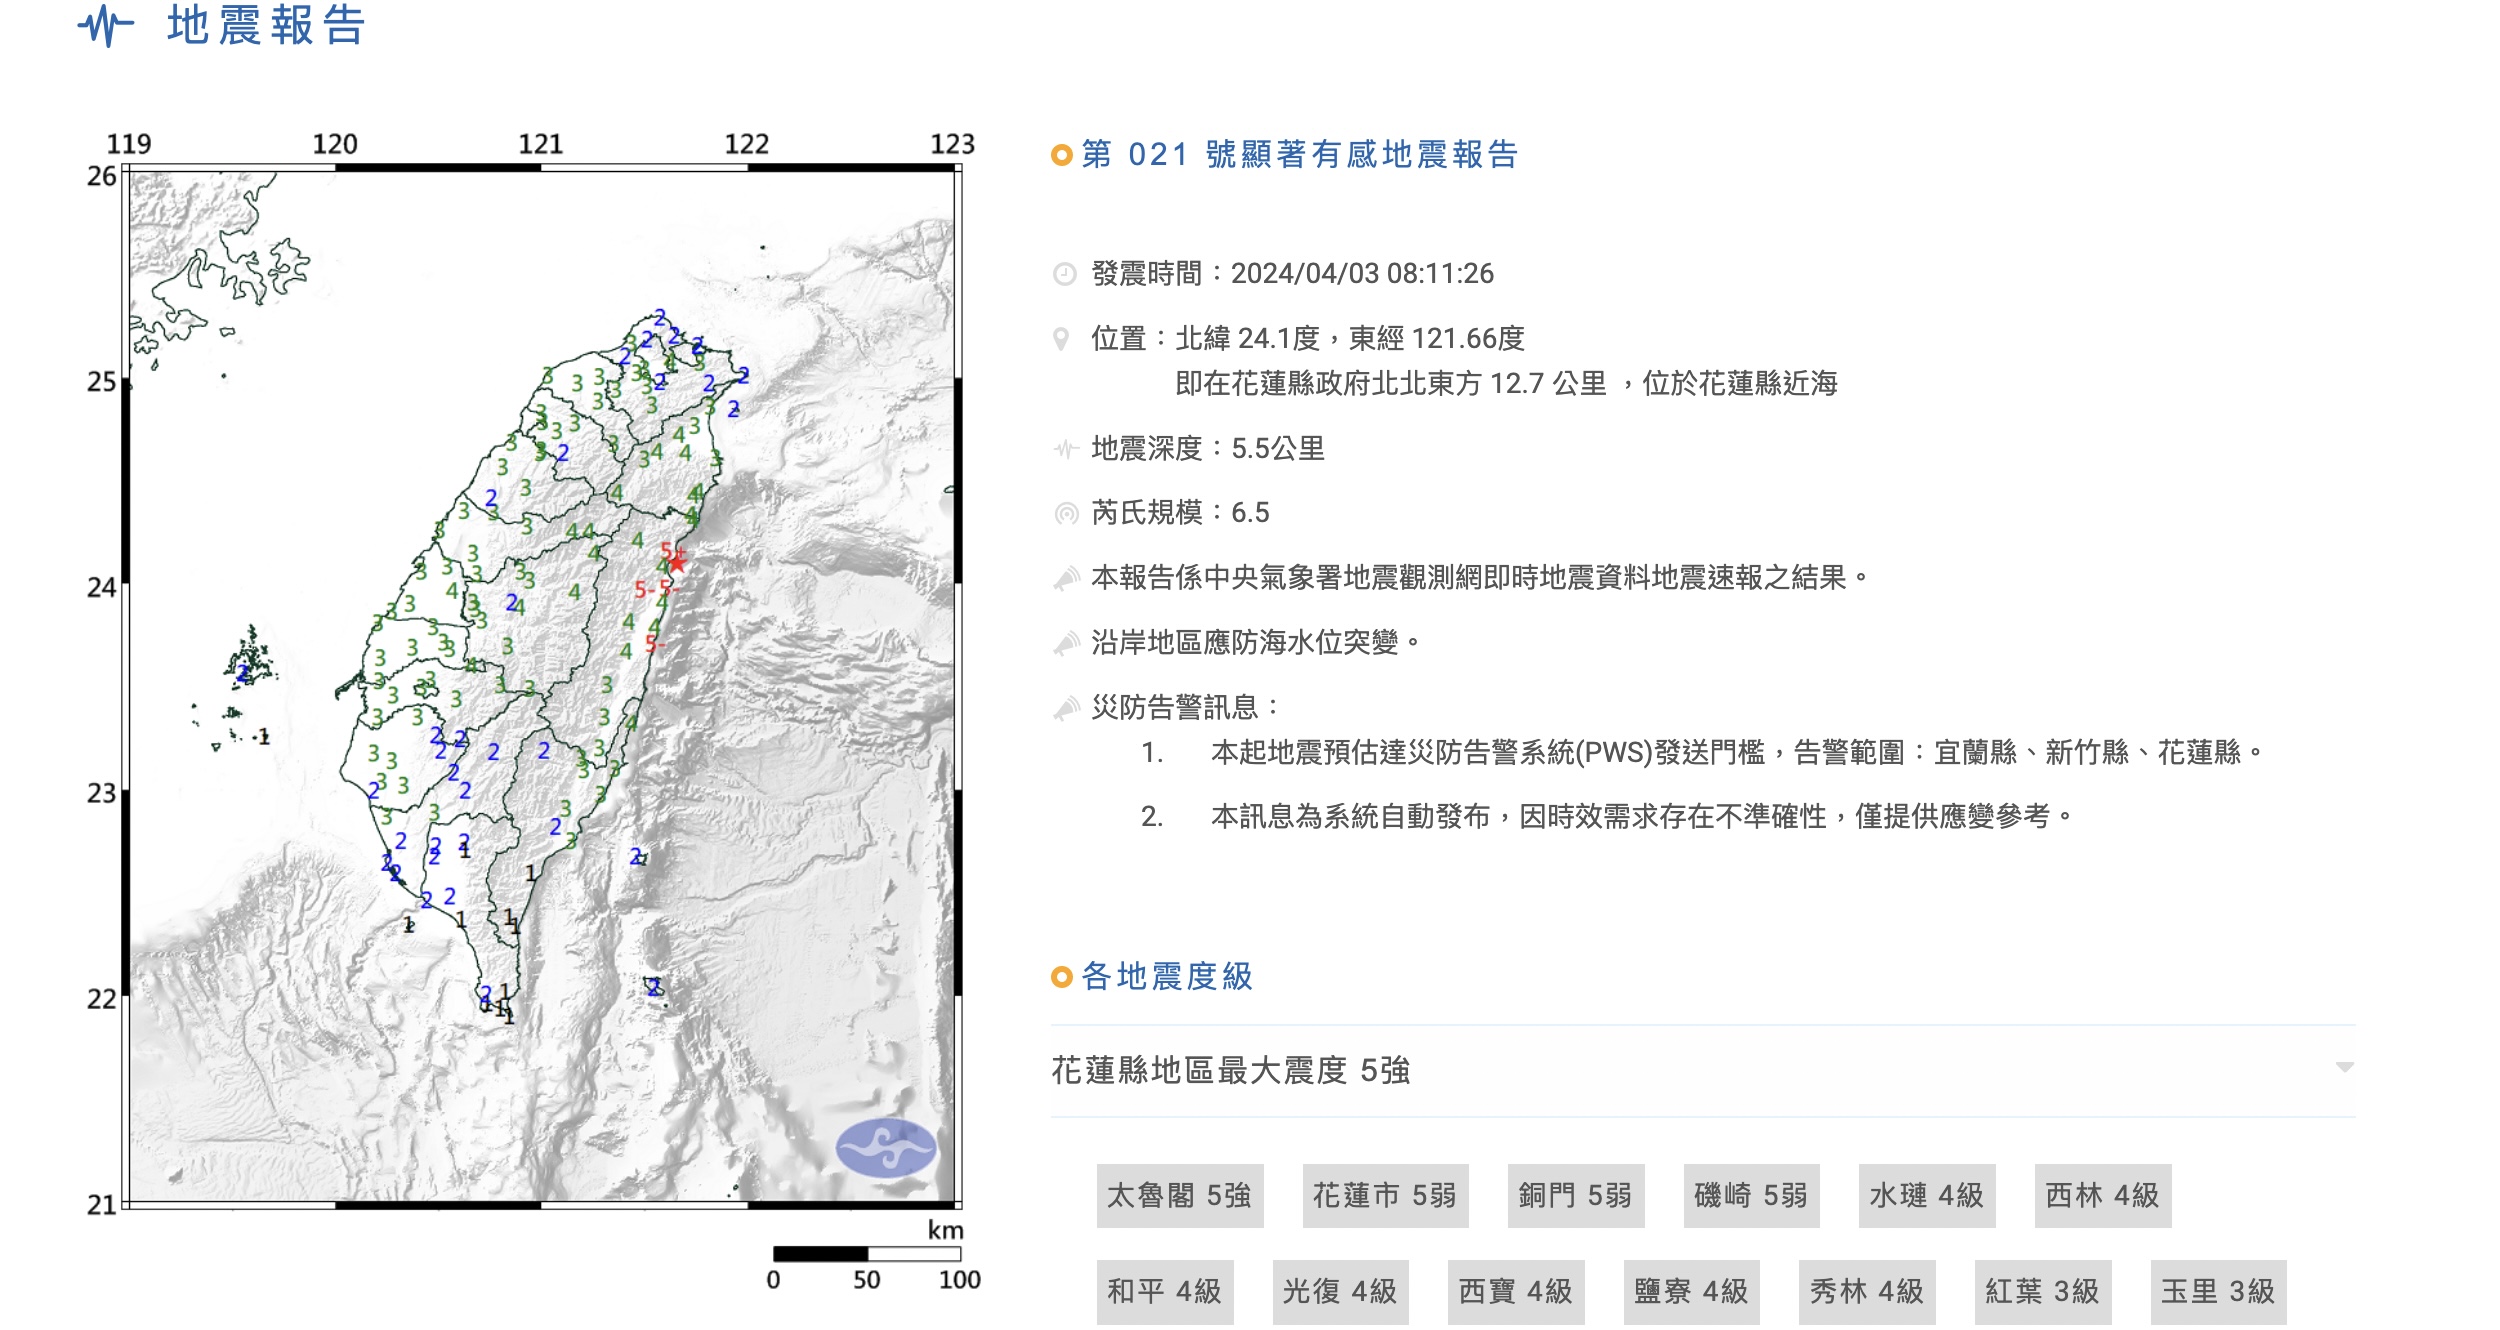 Một trận động đất khác mạnh 6.5 độ đã xảy ra ở ngoài khơi Hoa Liên, Đài Loan, vào lúc 8 giờ 11 phút. (Ảnh: Cục Khí tượng Trung ương Đài Loan)